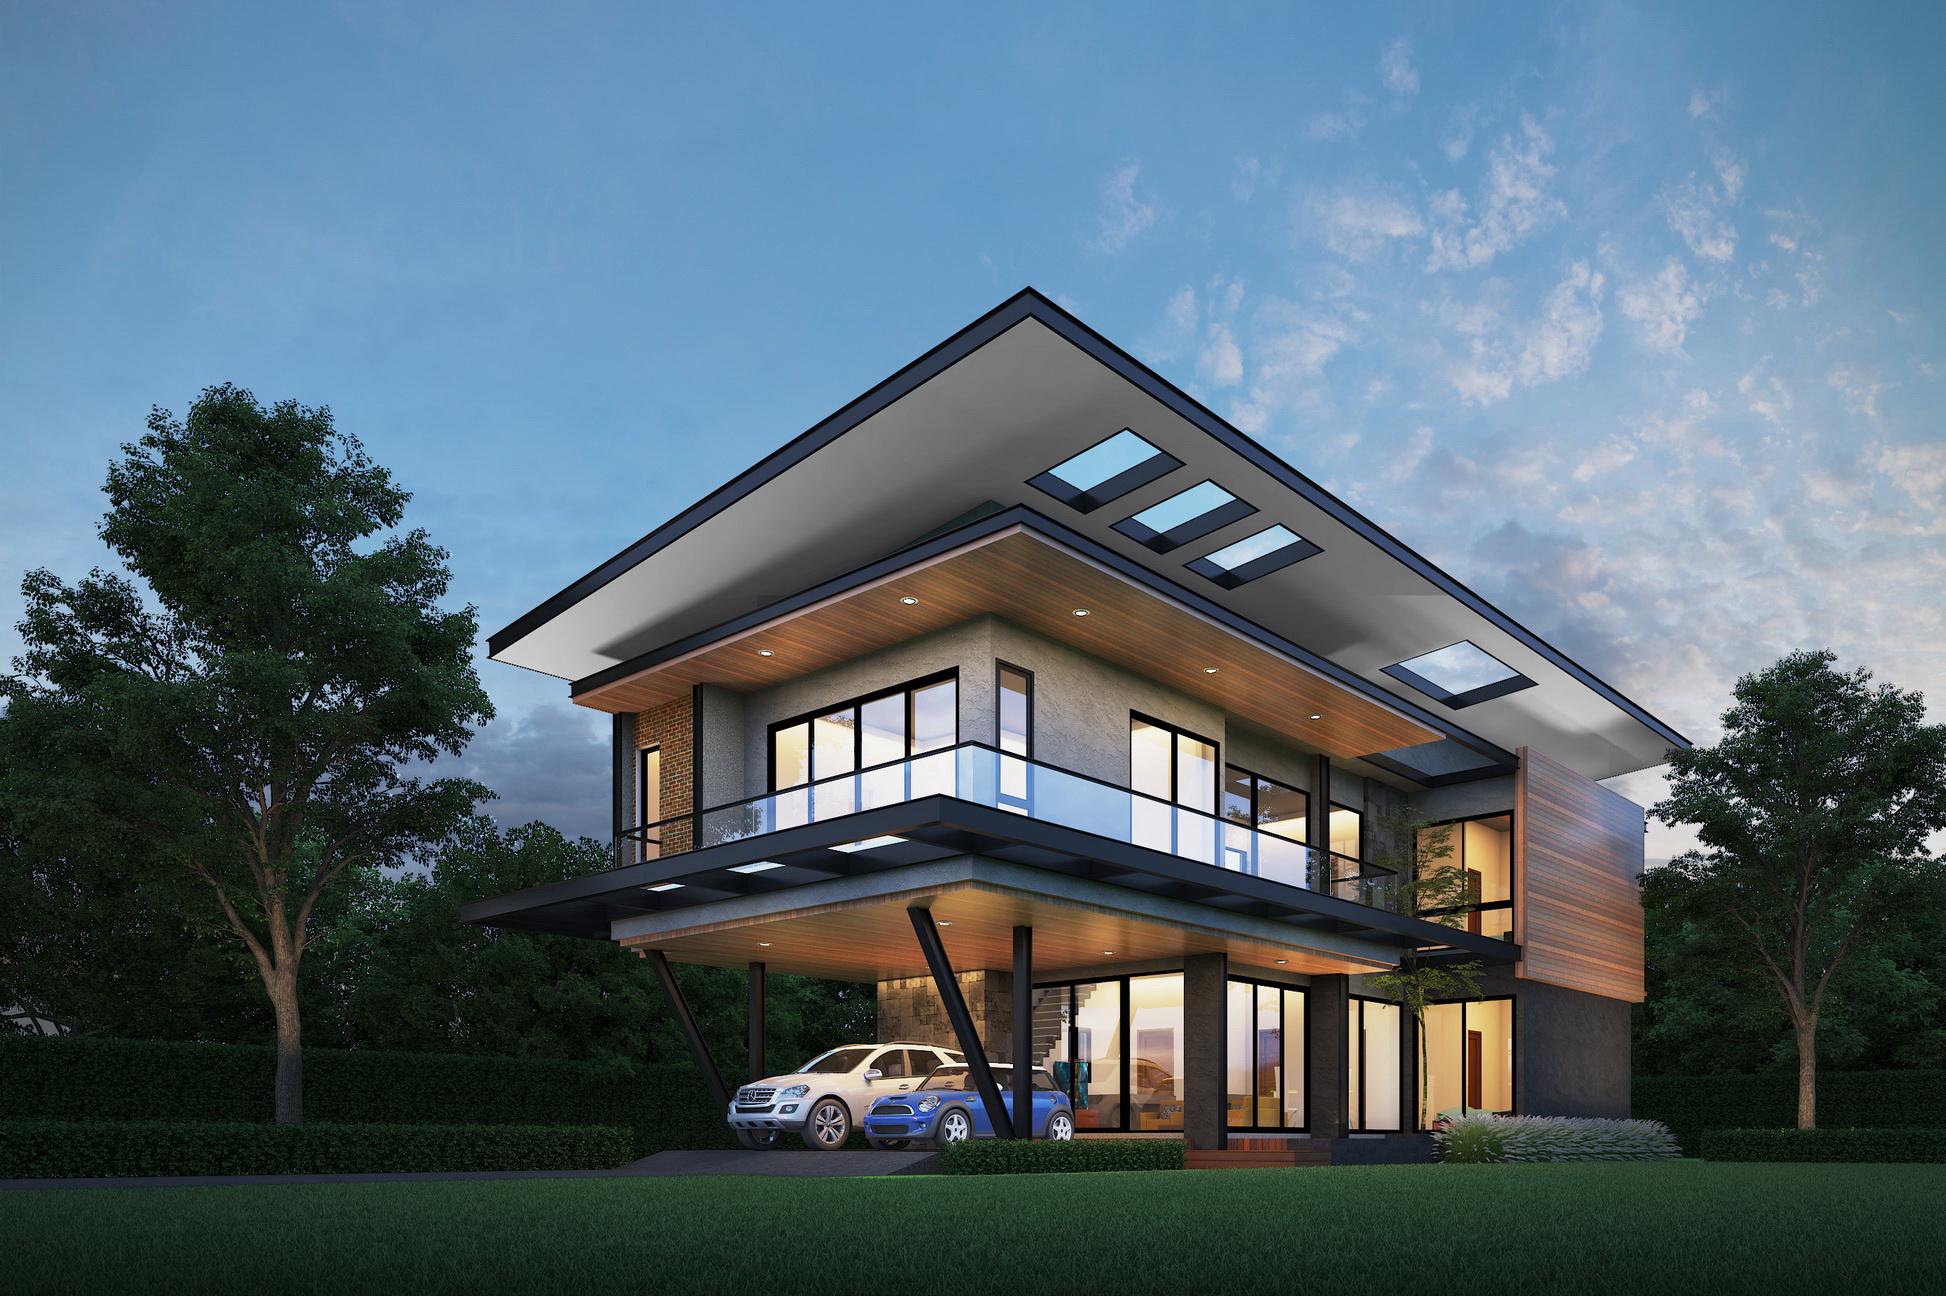 รูปบทความ “รอแยลเฮ้าส์” ปรับกลยุทธ์ O2O รับ Insight ลูกค้ารับสร้างบ้านยุคใหม่  เปิดตัว 4 แบบบ้านใหม่